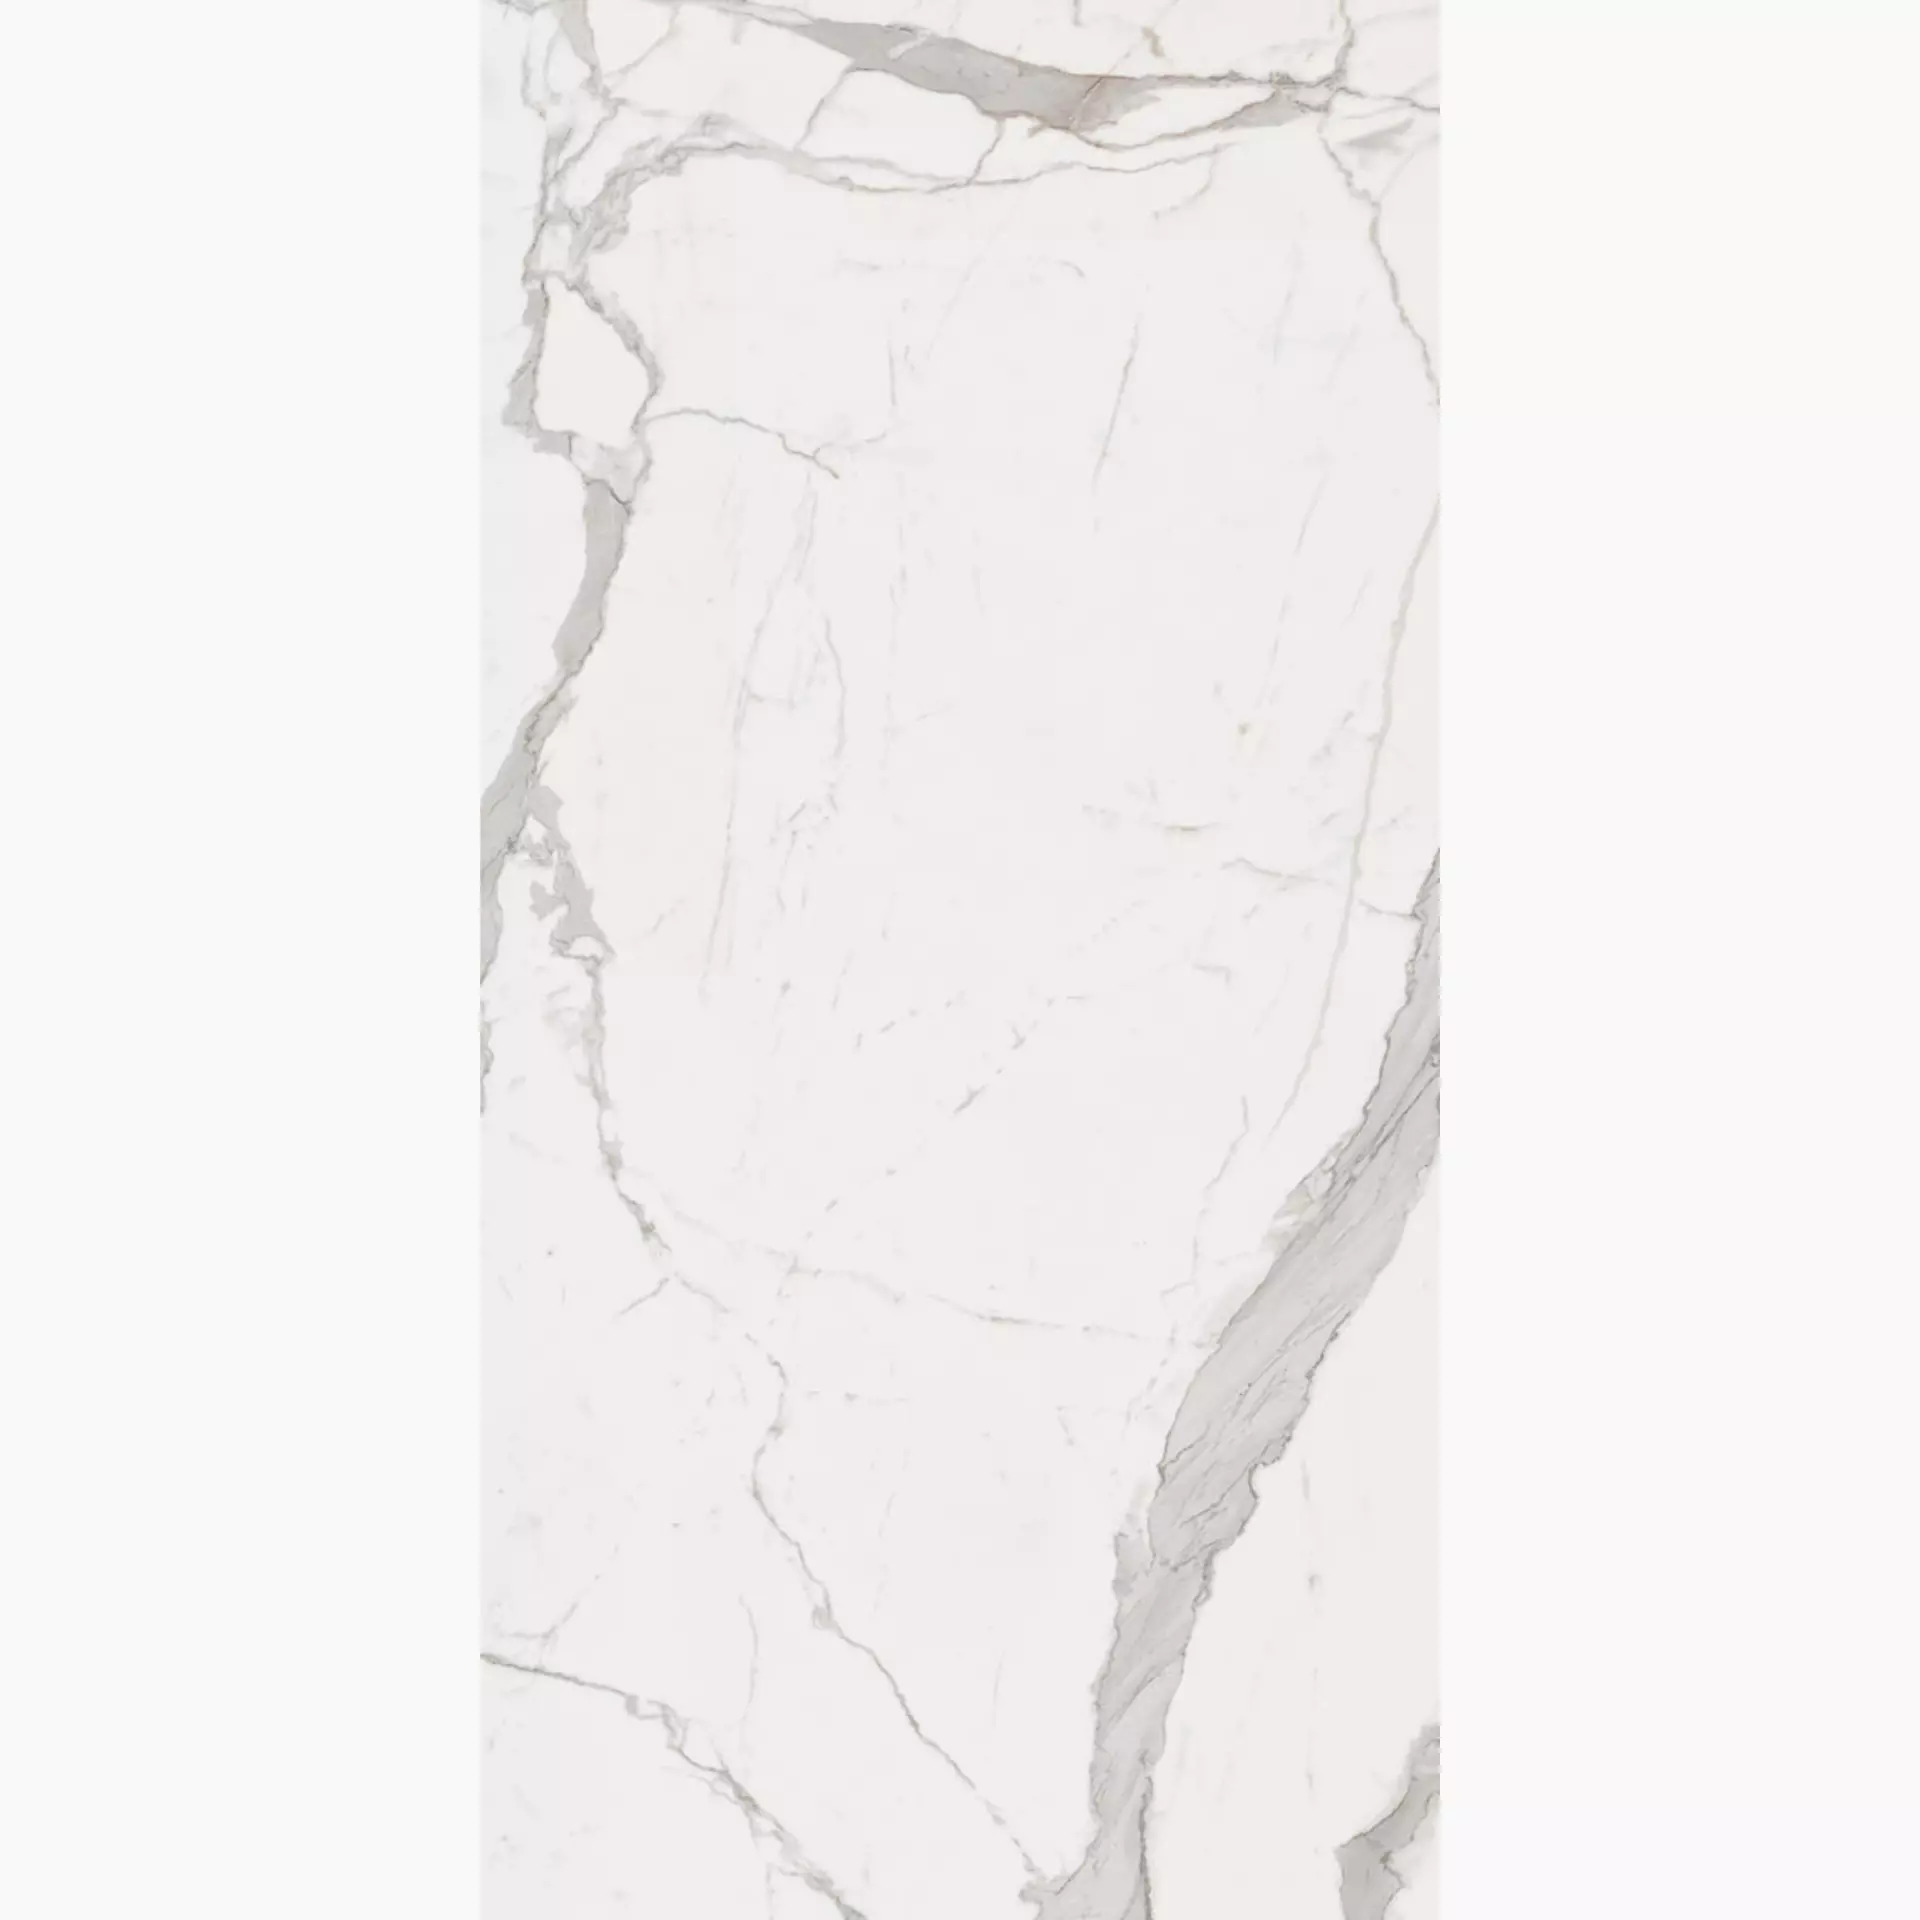 La Faenza Bianco White Natural Flat Matt 166243 90x180cm rectified 10mm - CAL BO 9018 RM